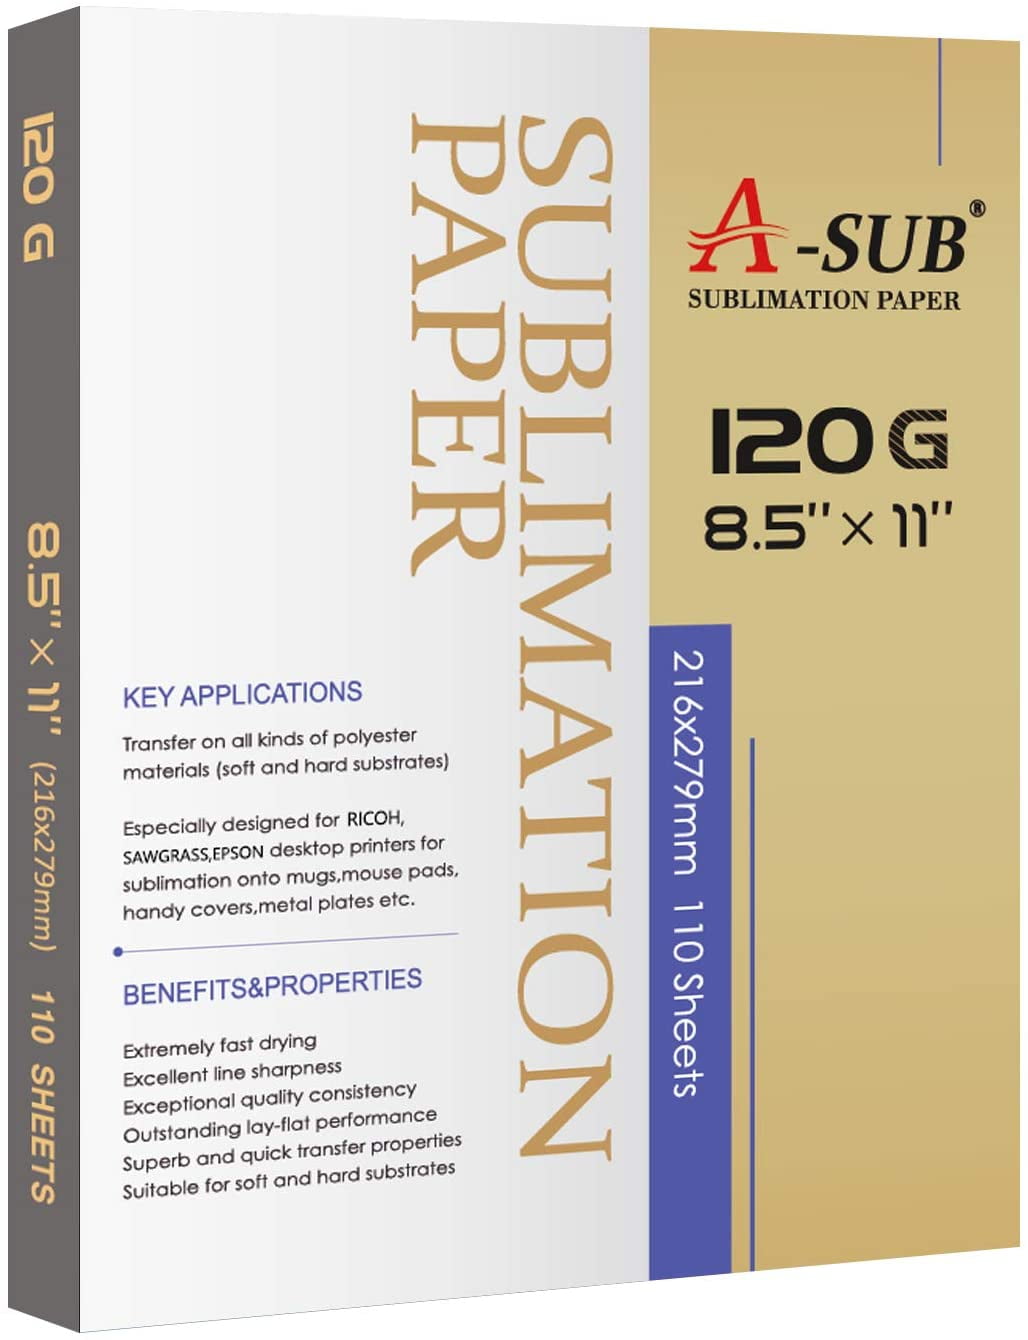 SUBLICOTTON HEAT TRANSFER PAPER  20 PK 8.5"X11" Sublimation paper for Cotton #1 